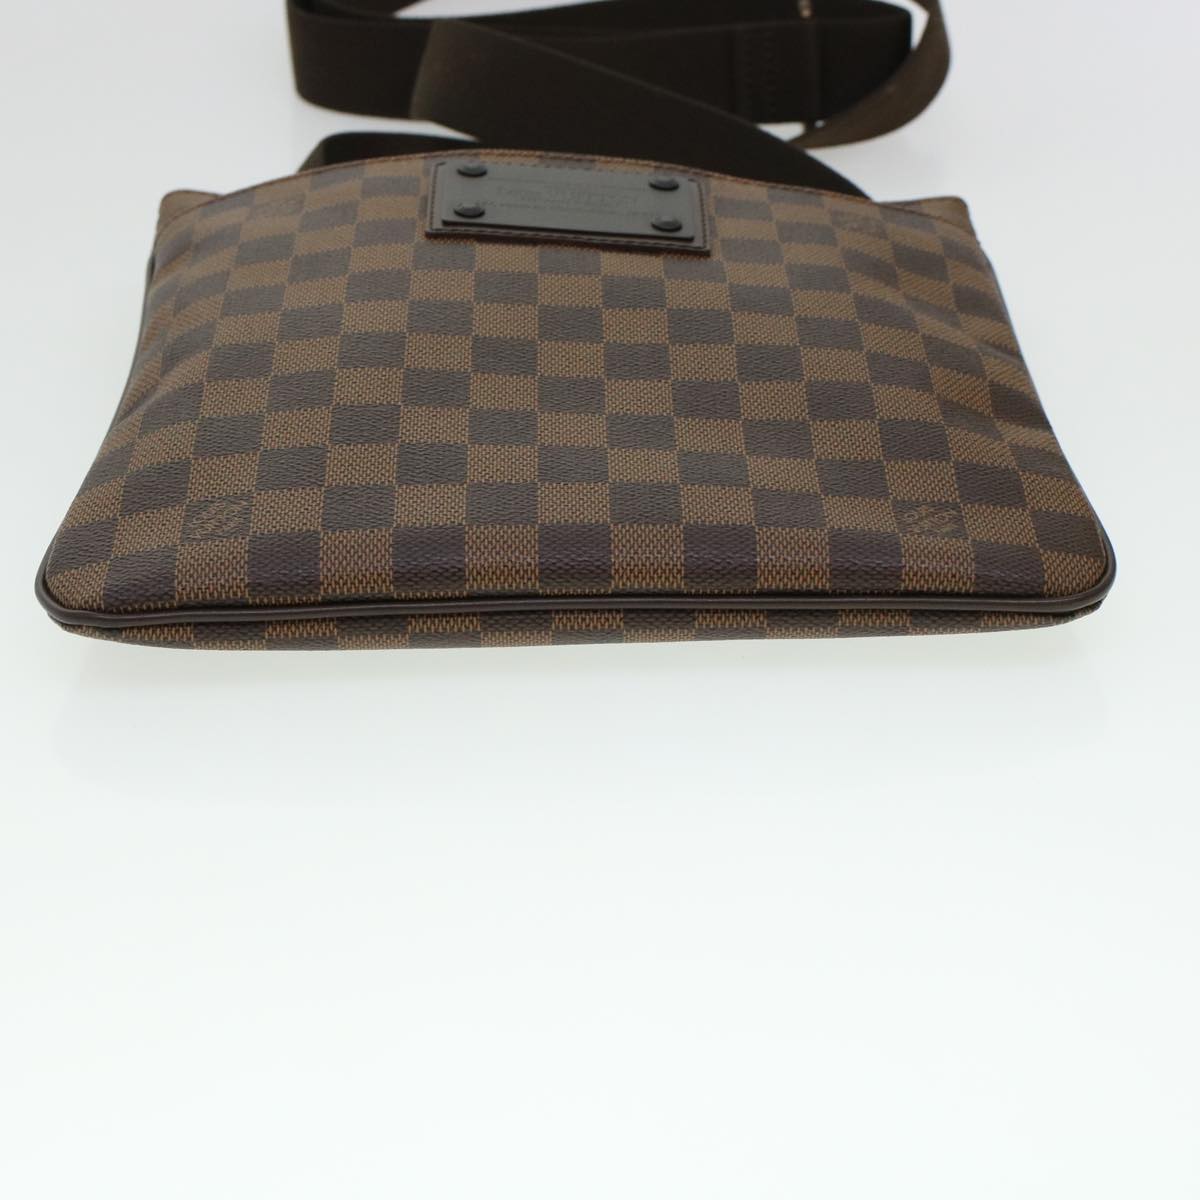 Louis Vuitton Damier Ebene Pochette Plat Brooklyn Bag N41100 Auth 45052a